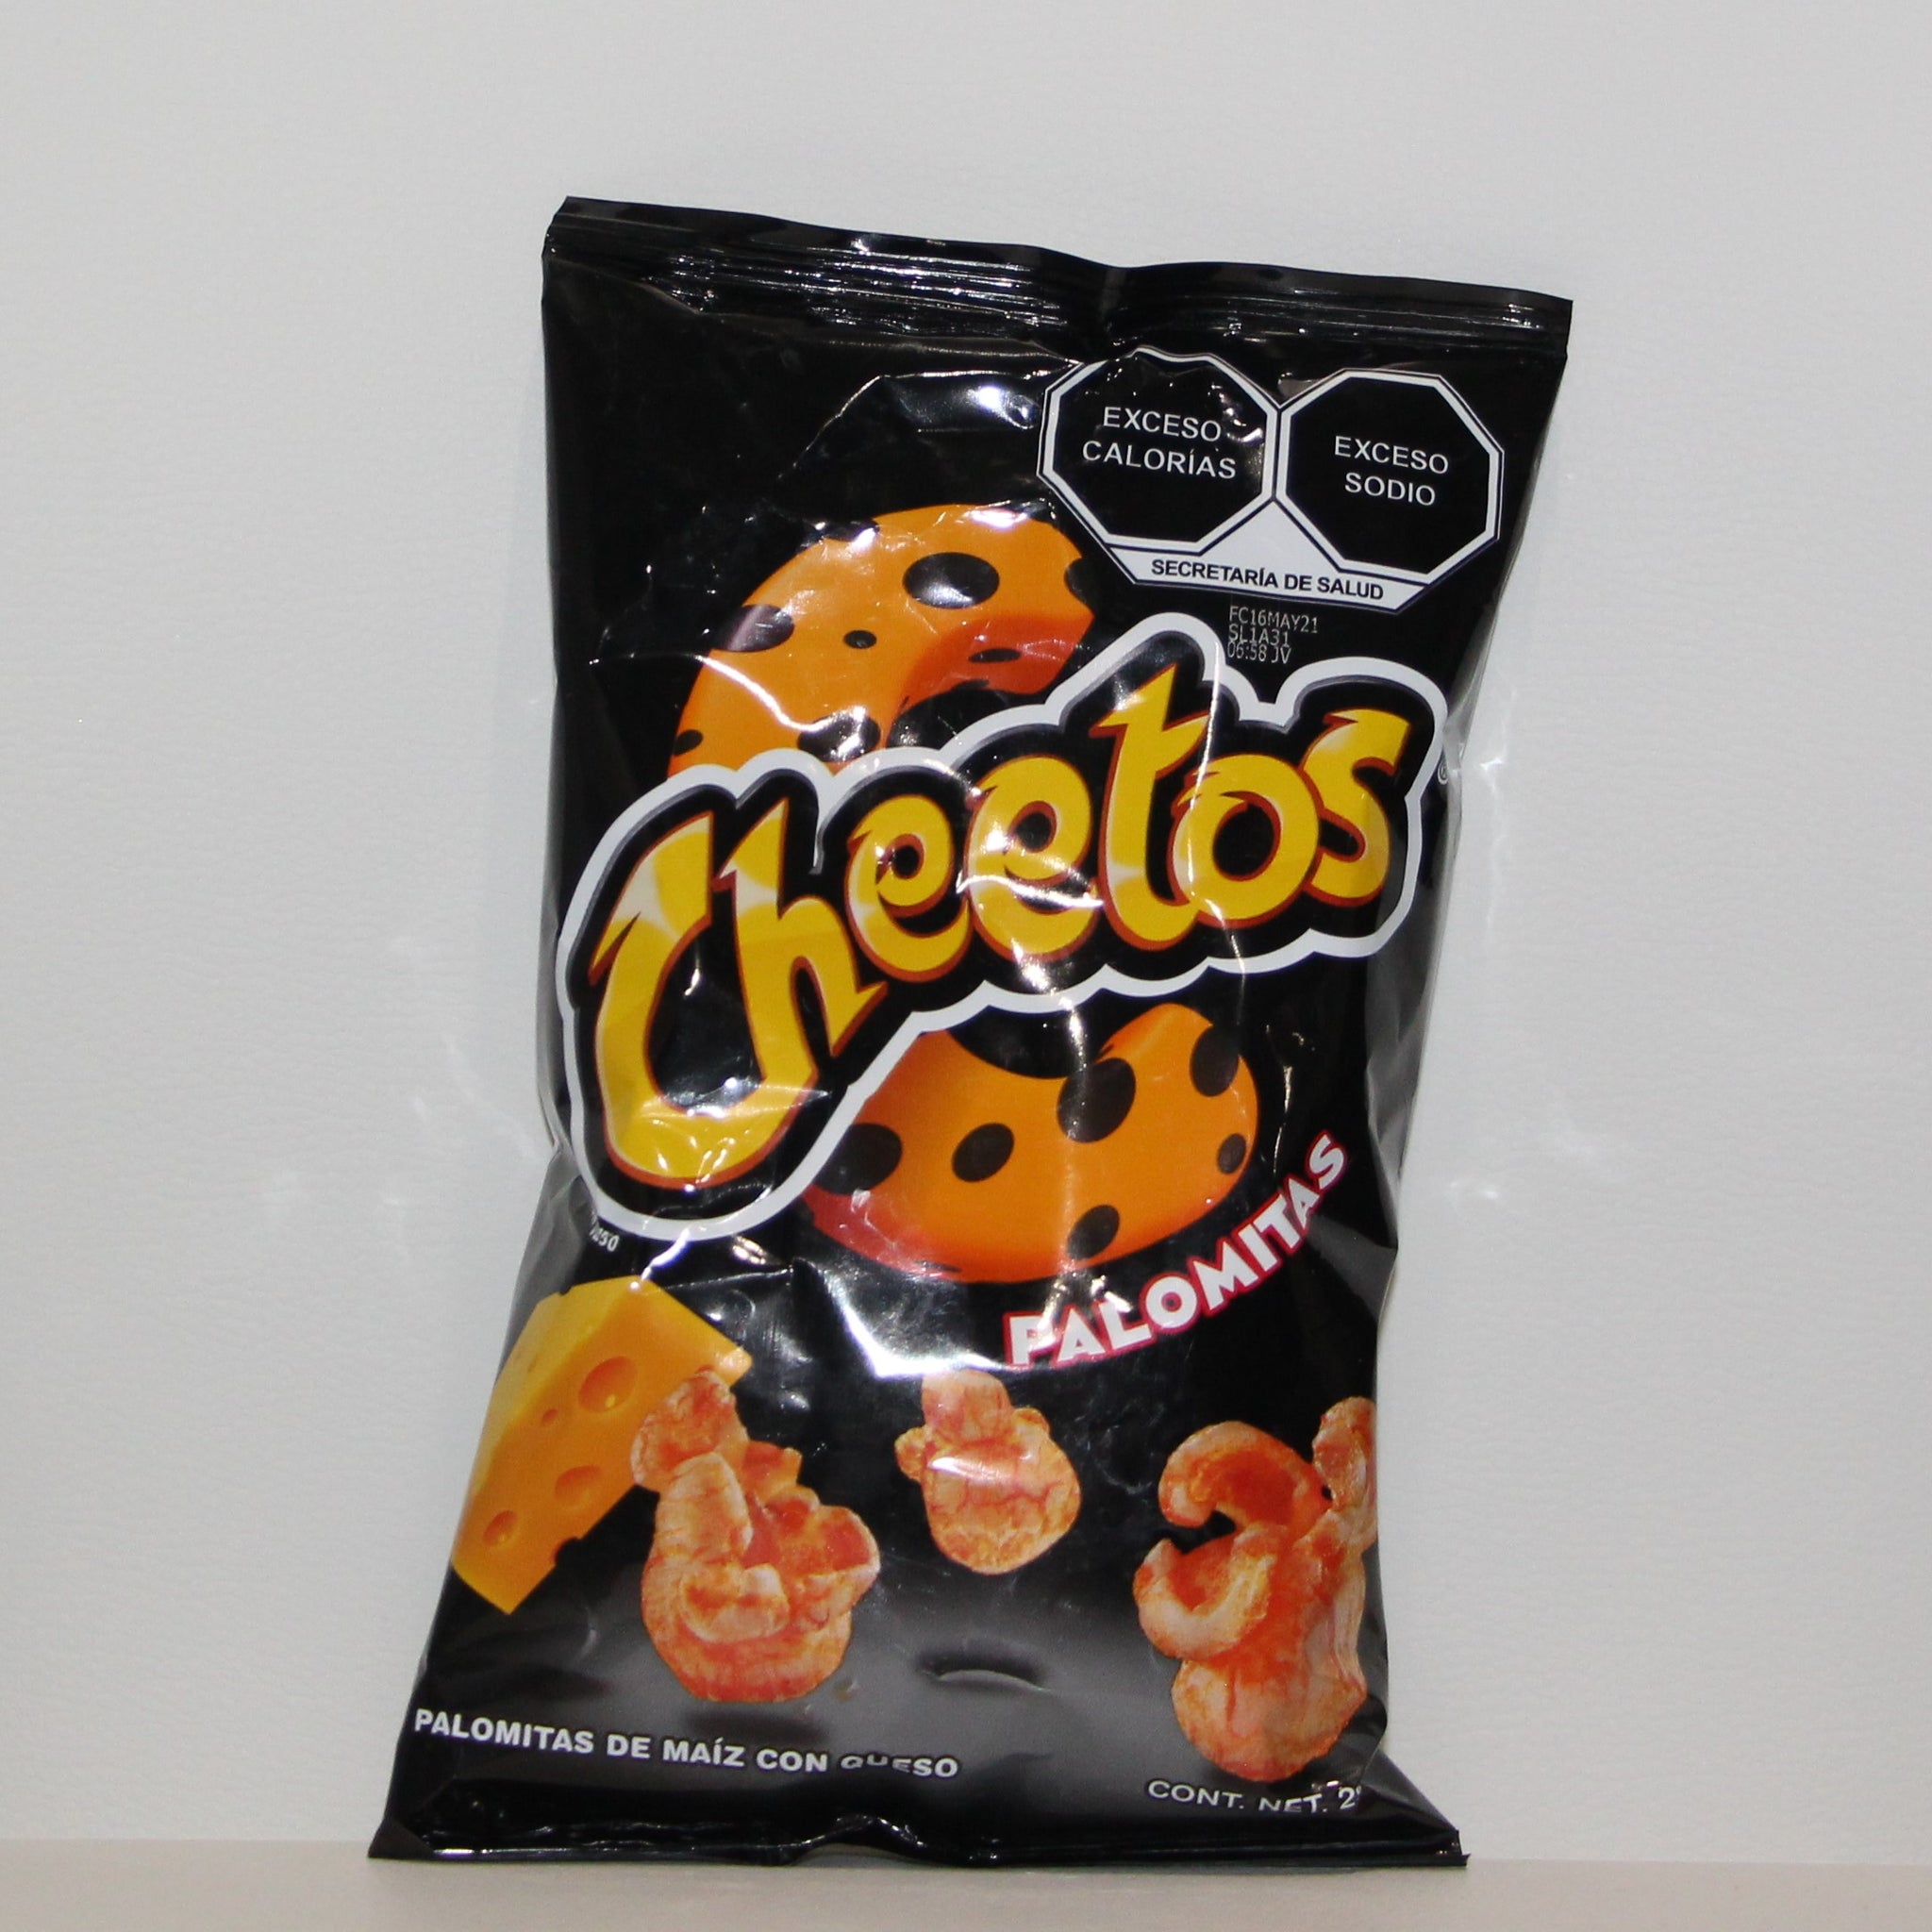 Cheetos Palomitas